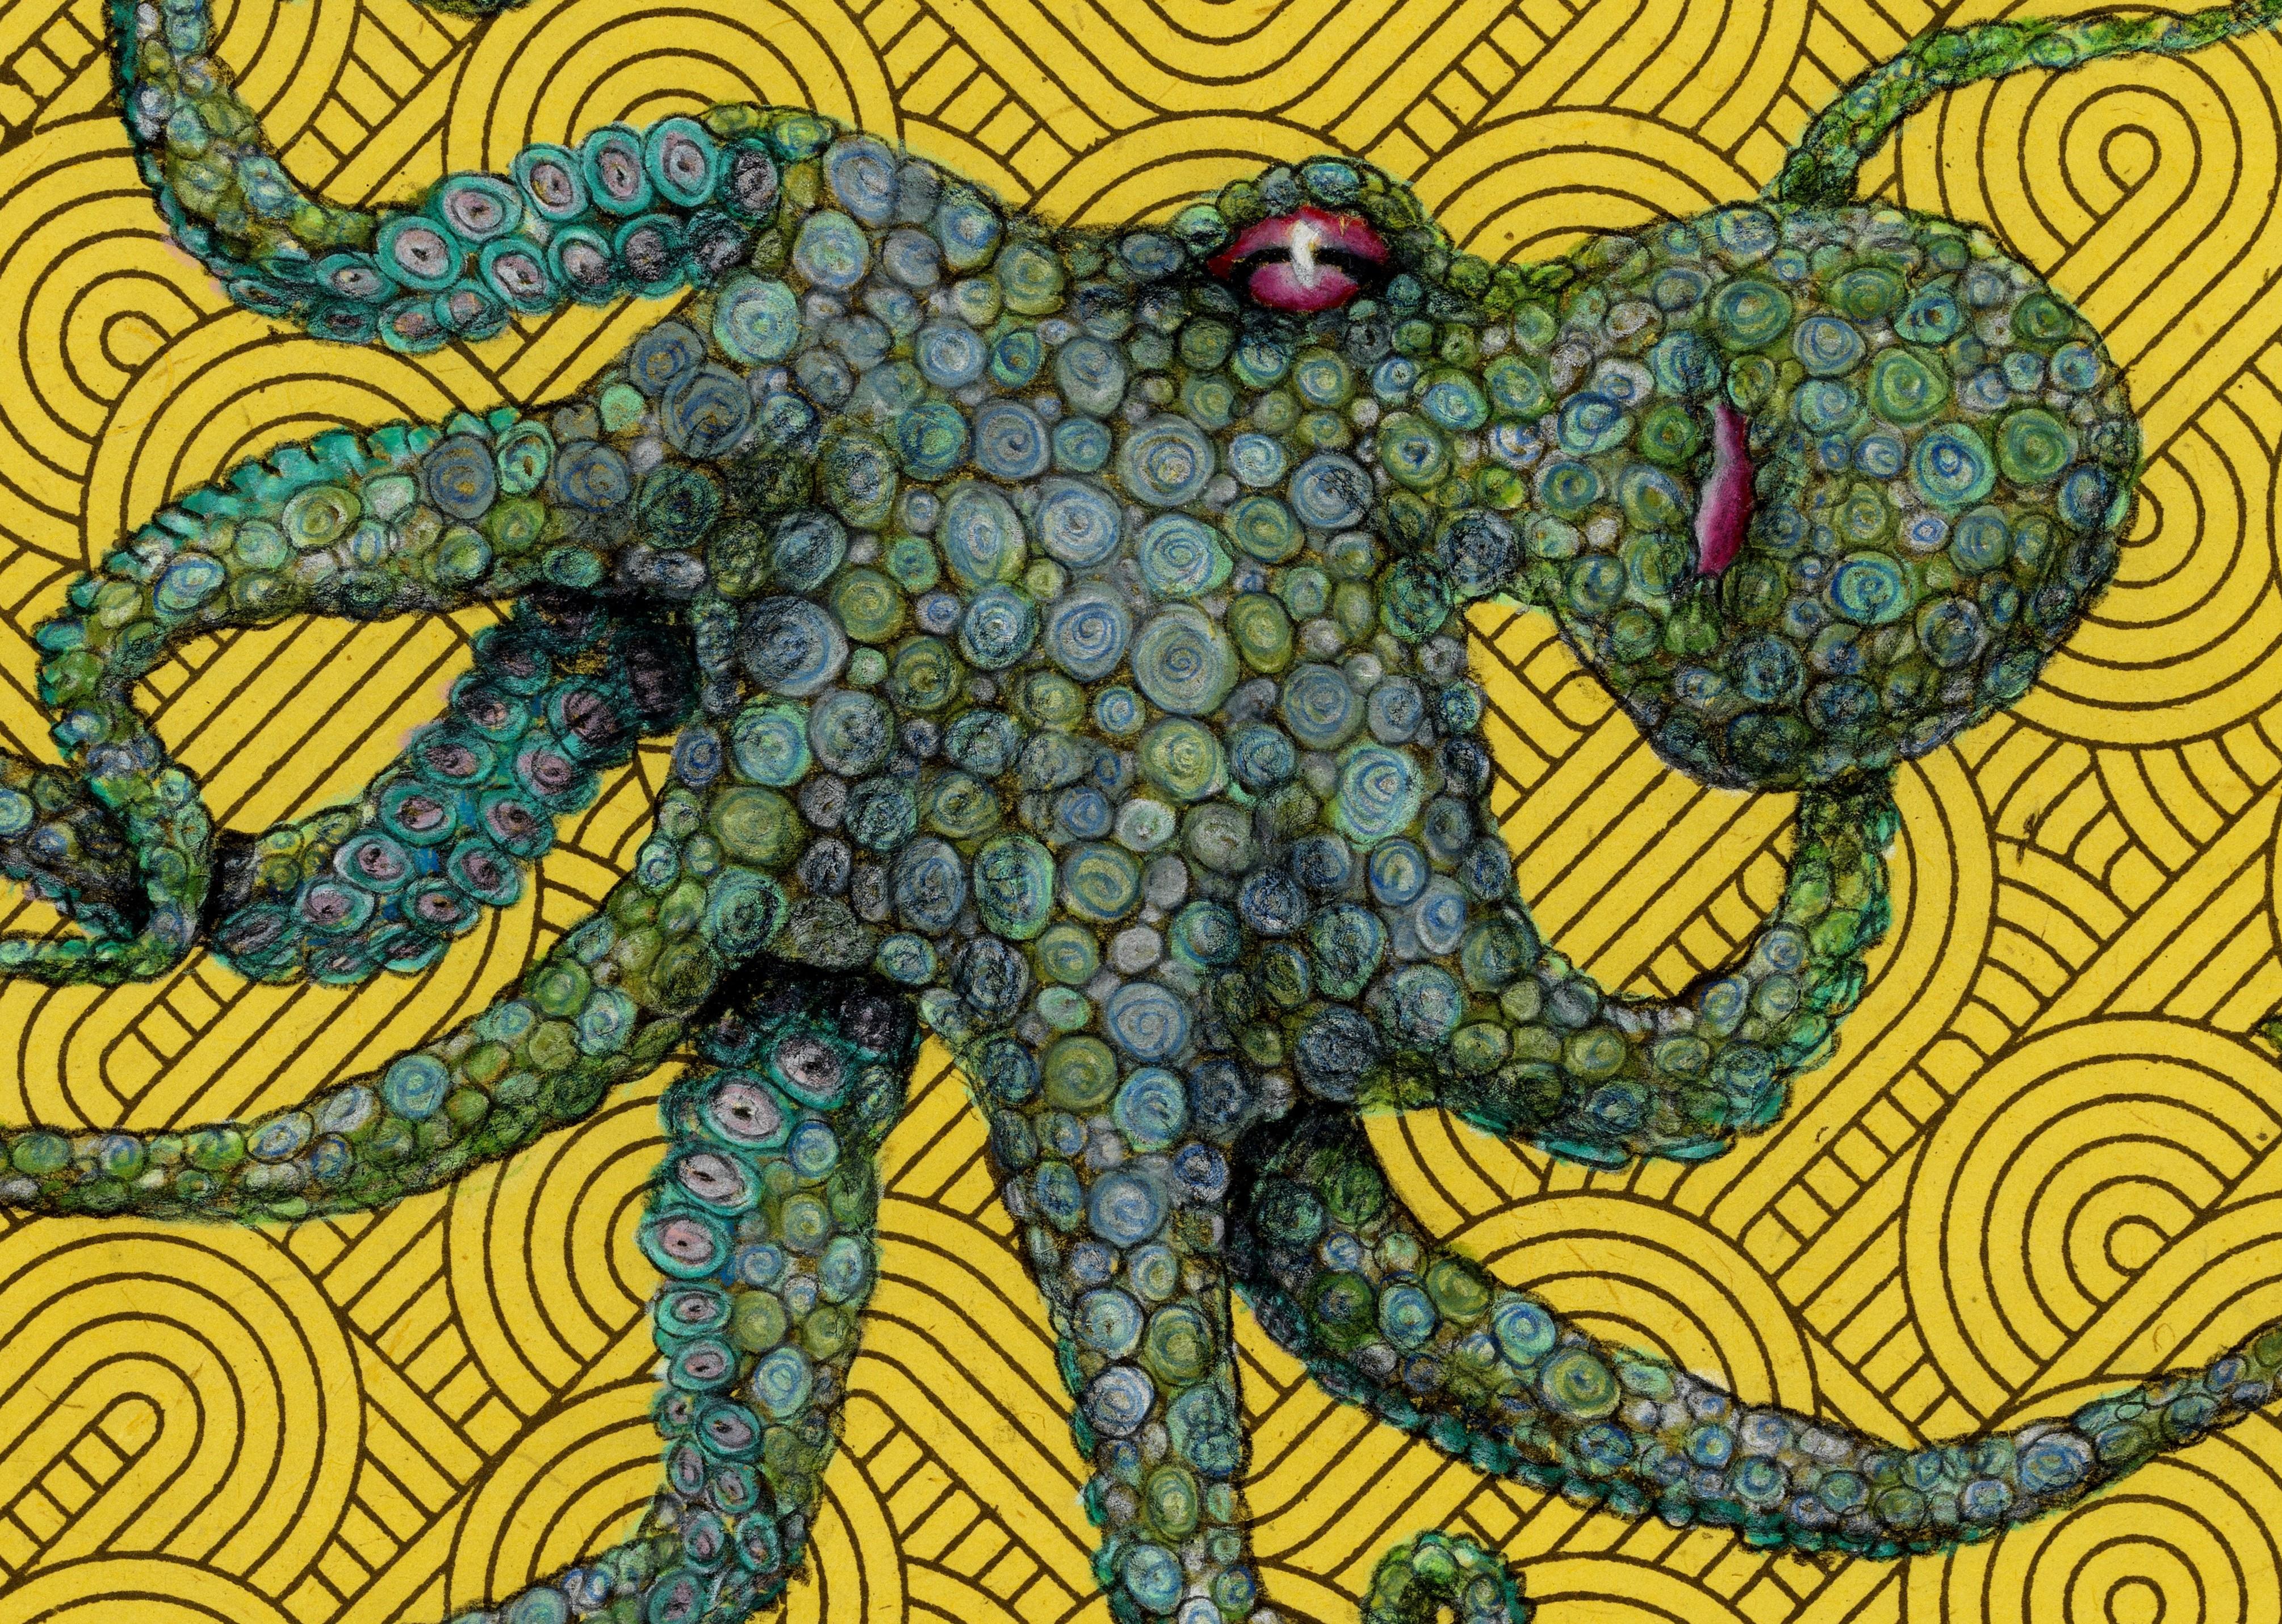 Boucle d'or - Goblin vert - Gyotaku Style Sumi Ink Painting of an Octopus (peinture à l'encre Sumi d'une pieuvre) - Contemporain Art par Jeff Conroy